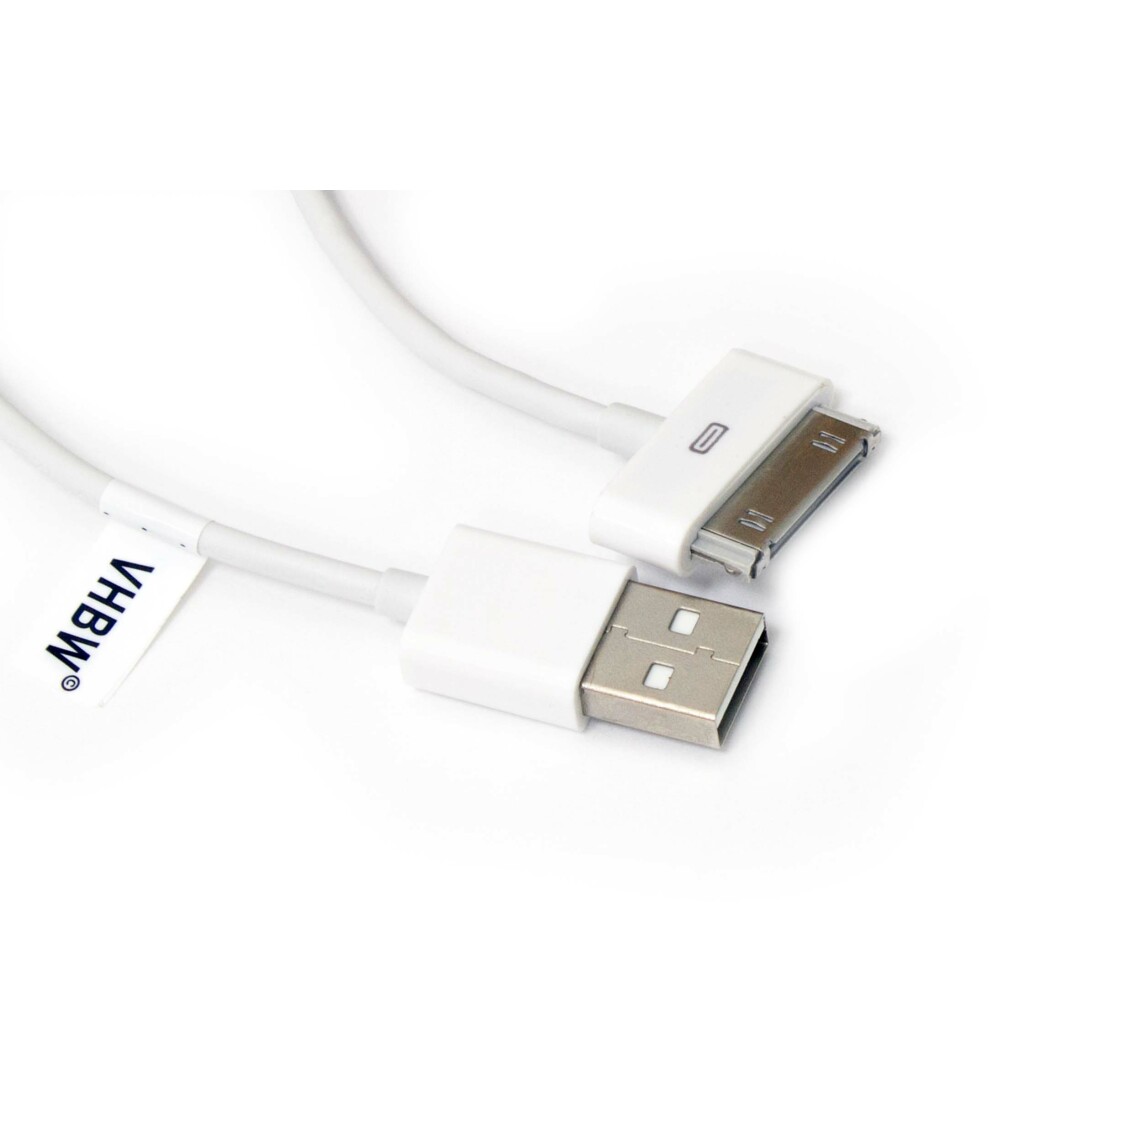 Vhbw - vhbw câble de données USB (type A sur iPod) compatible avec Apple iPod nano 3 Gen. - A1236, nano 4 Gen. - A1285 lecteur MP3 - blanc - Alimentation modulaire